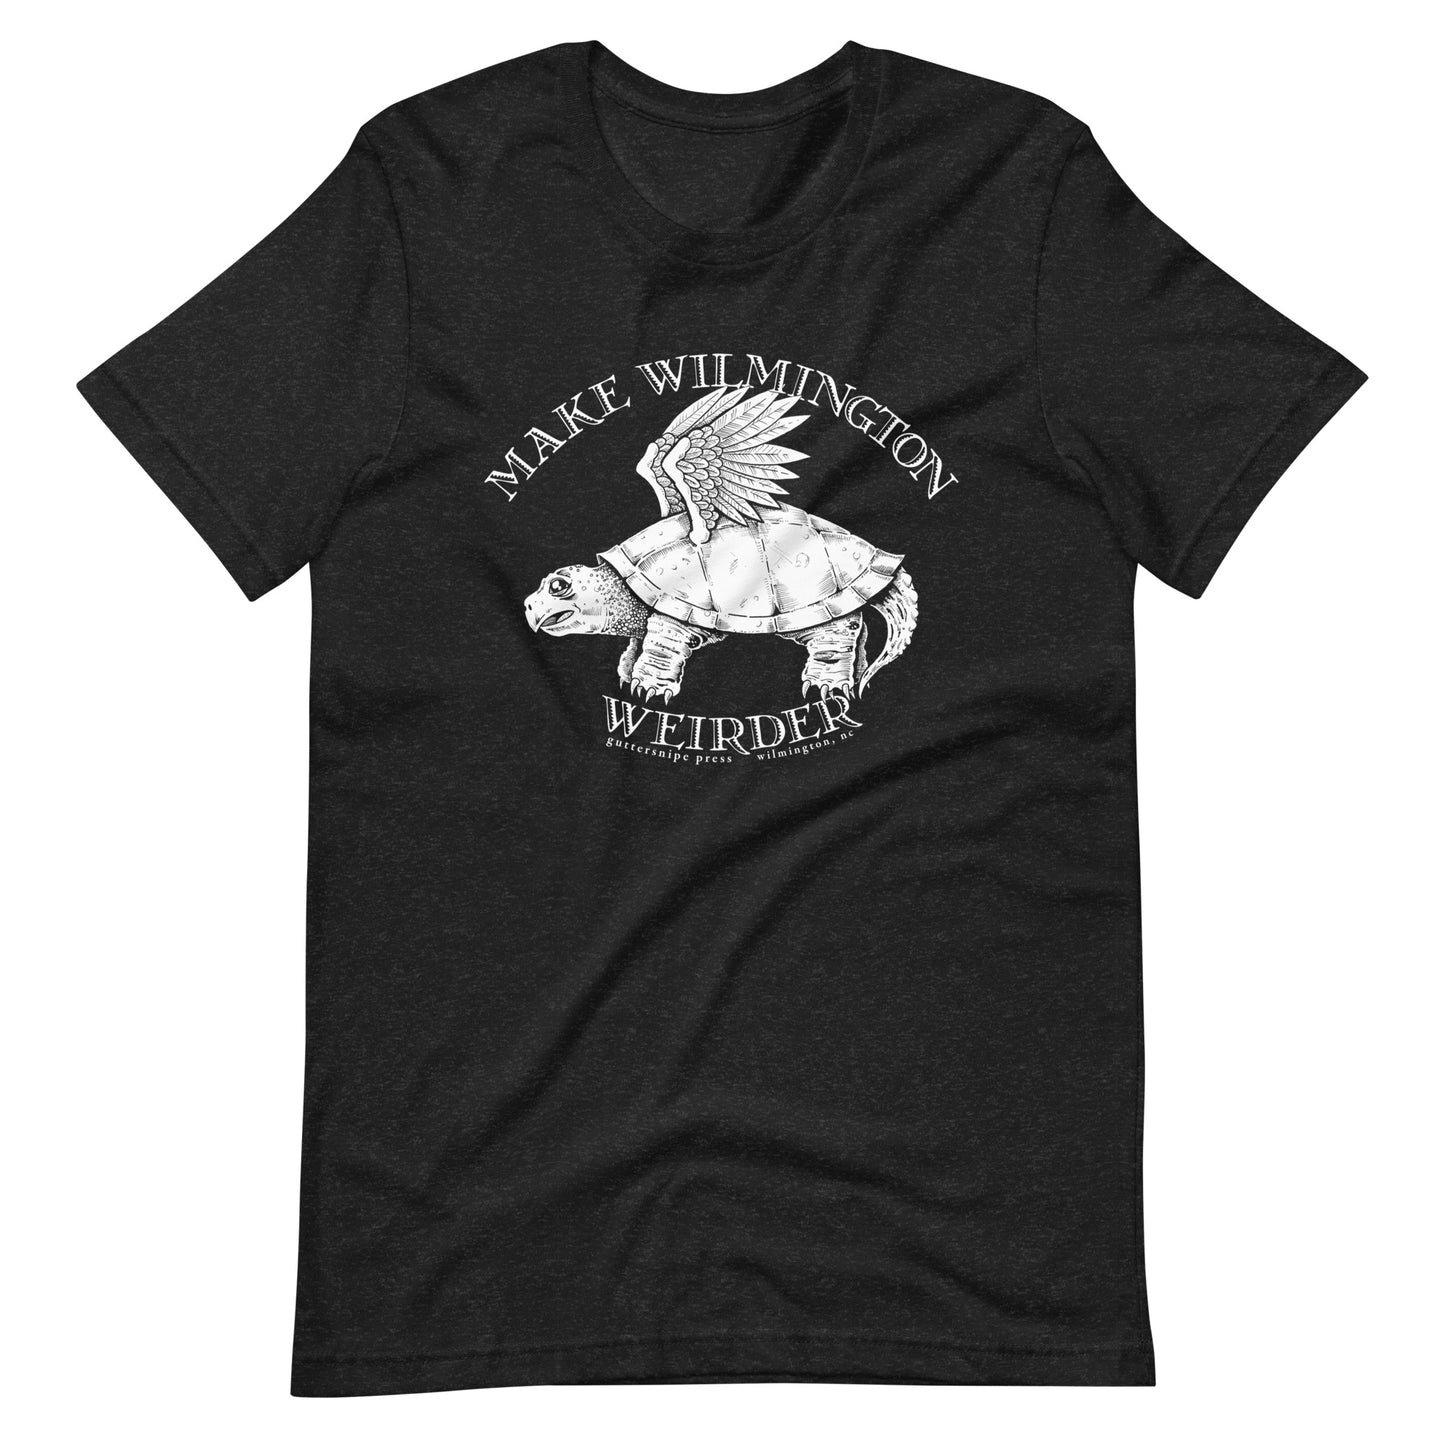 Make Wilmington Weirder Dark Tshirt